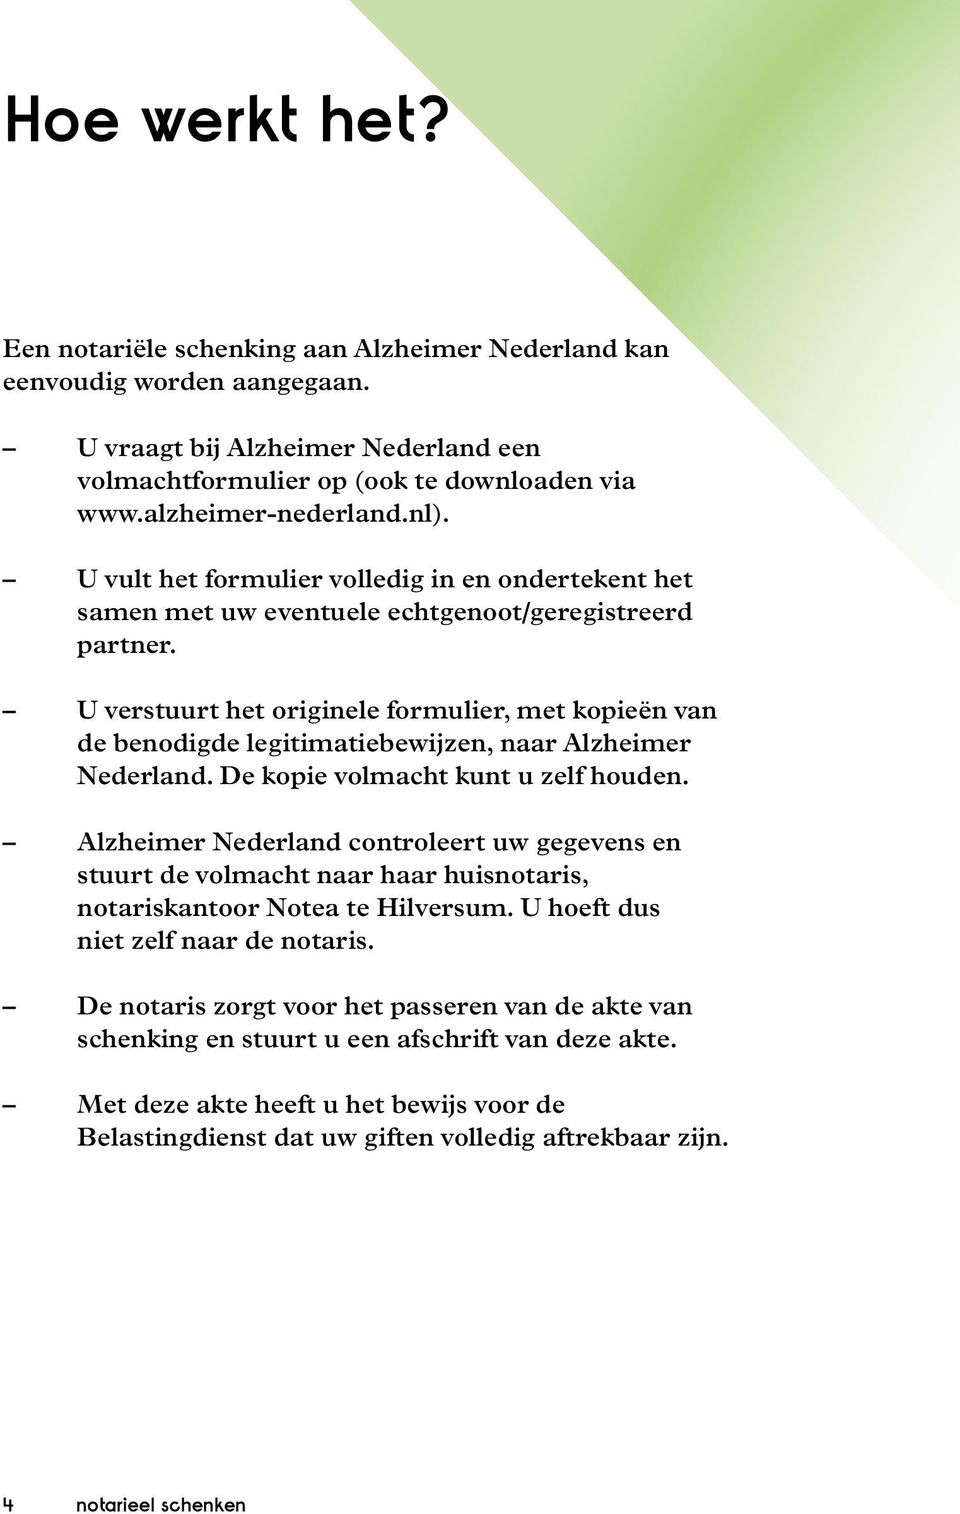 U verstuurt het originele formulier, met kopieën van de benodigde legitimatiebewijzen, naar Alzheimer Nederland. De kopie volmacht kunt u zelf houden.